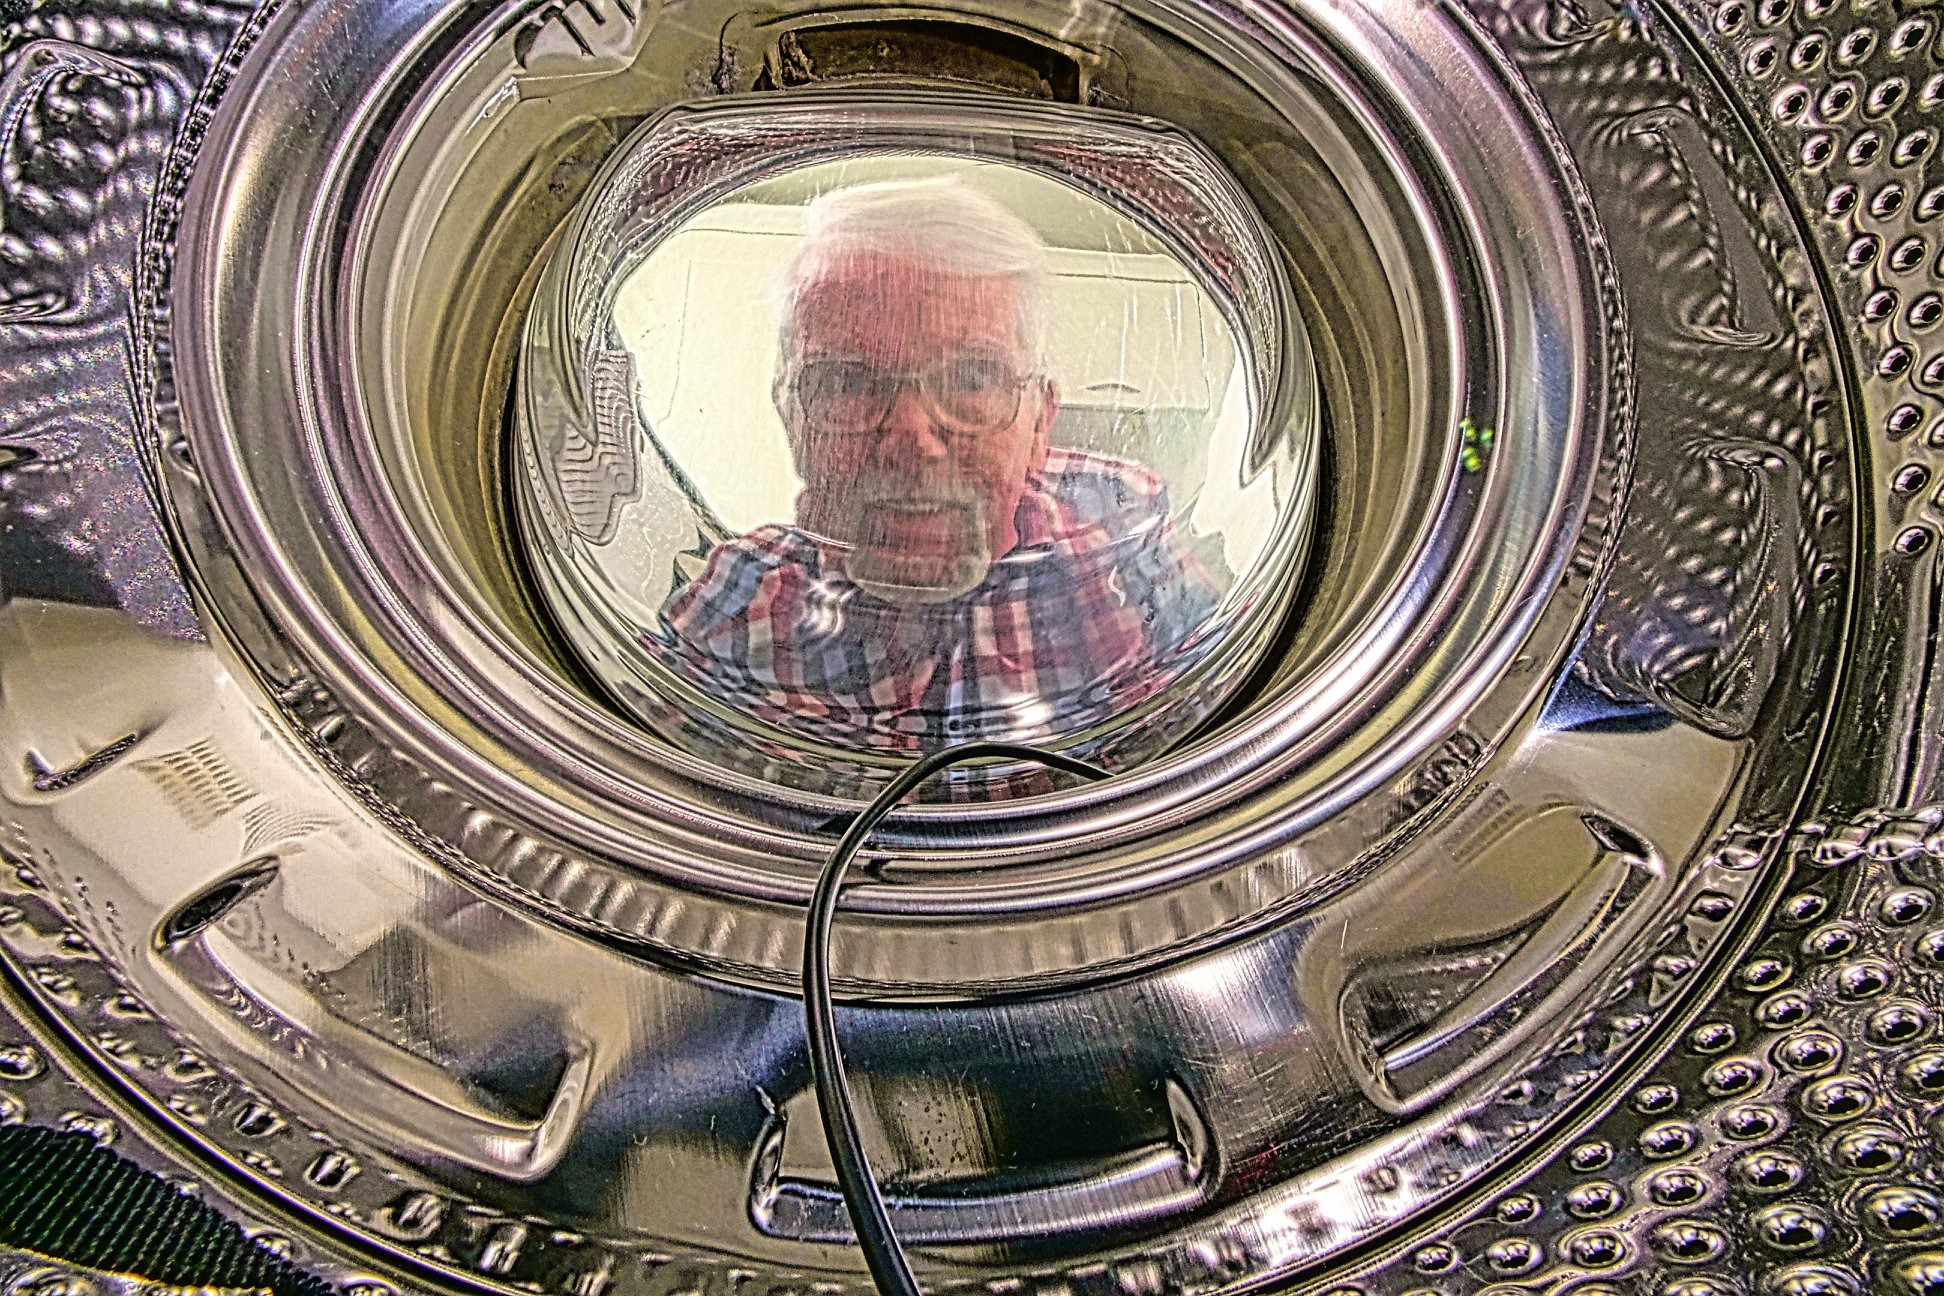 Barney Sharratt’s self-portrait taken from inside a washing machine